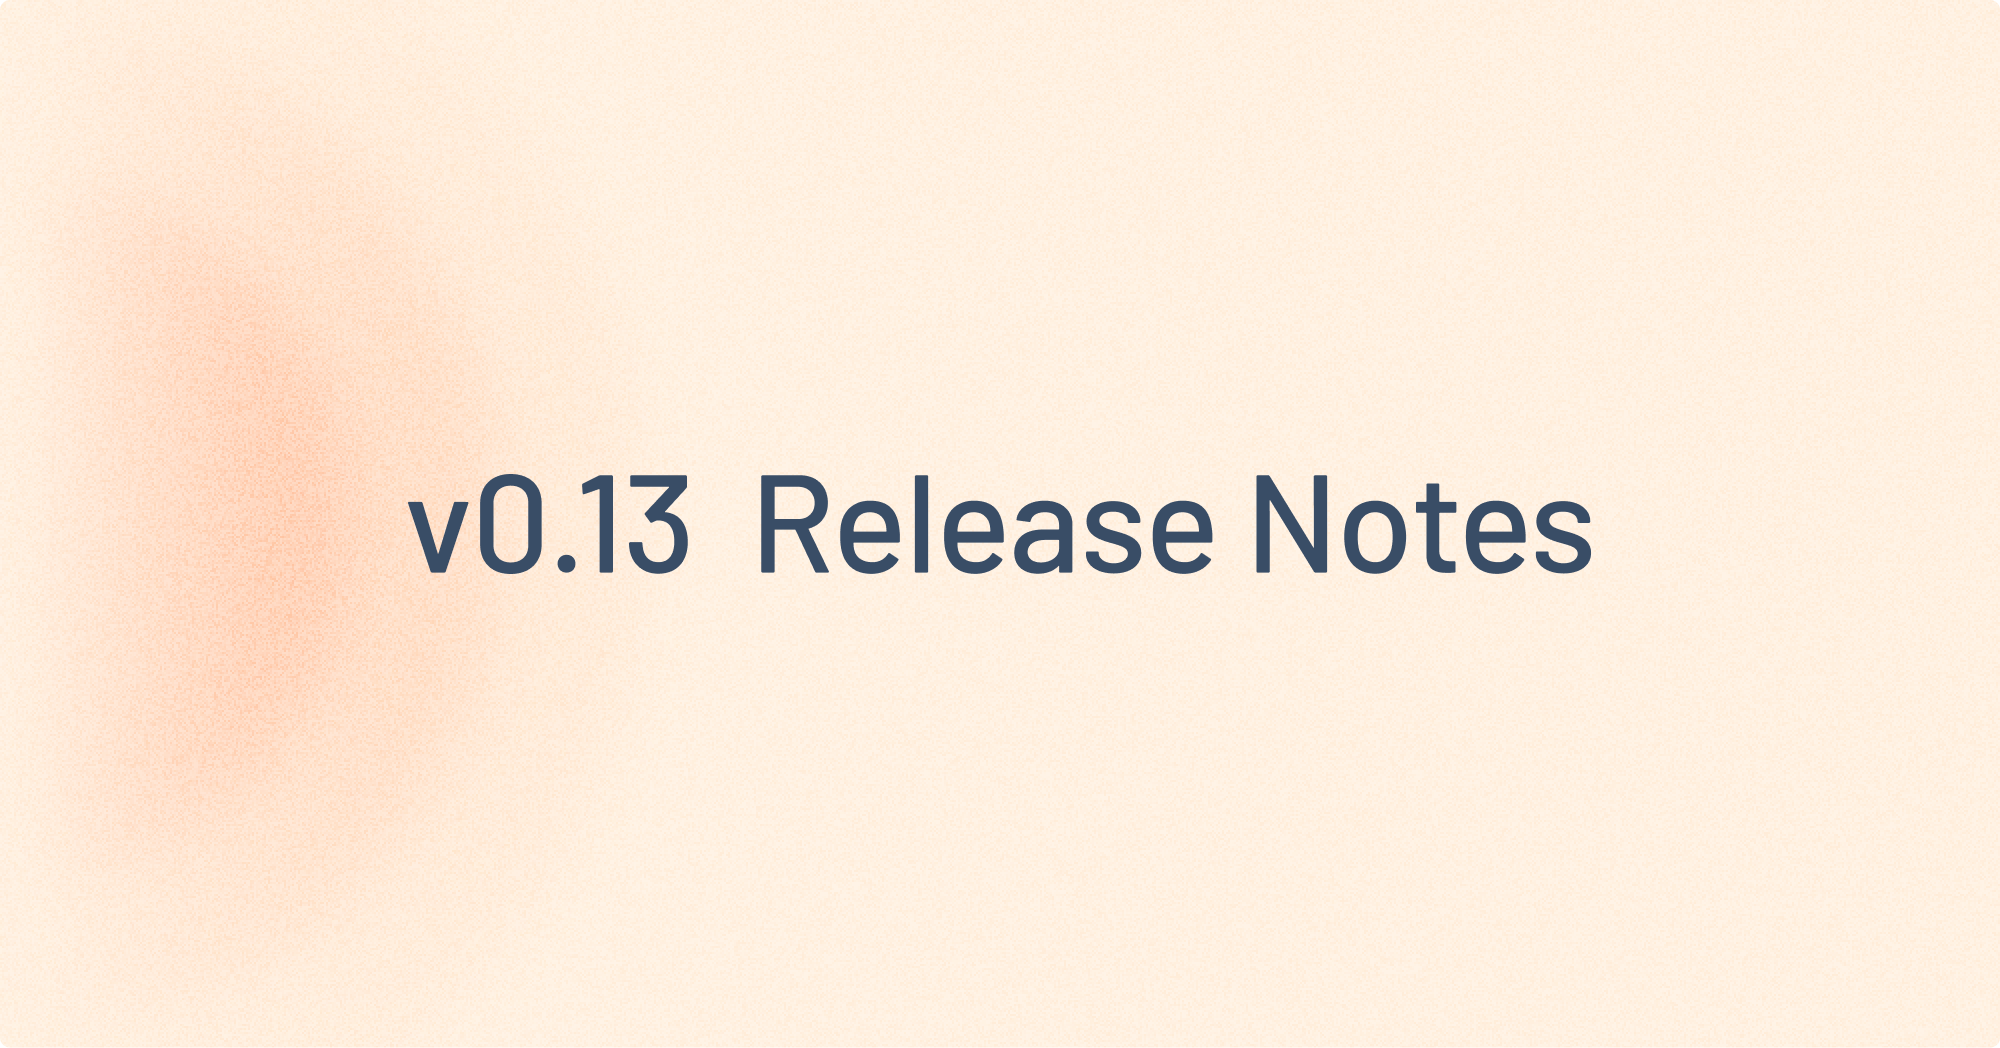 v0.13 Release Notes